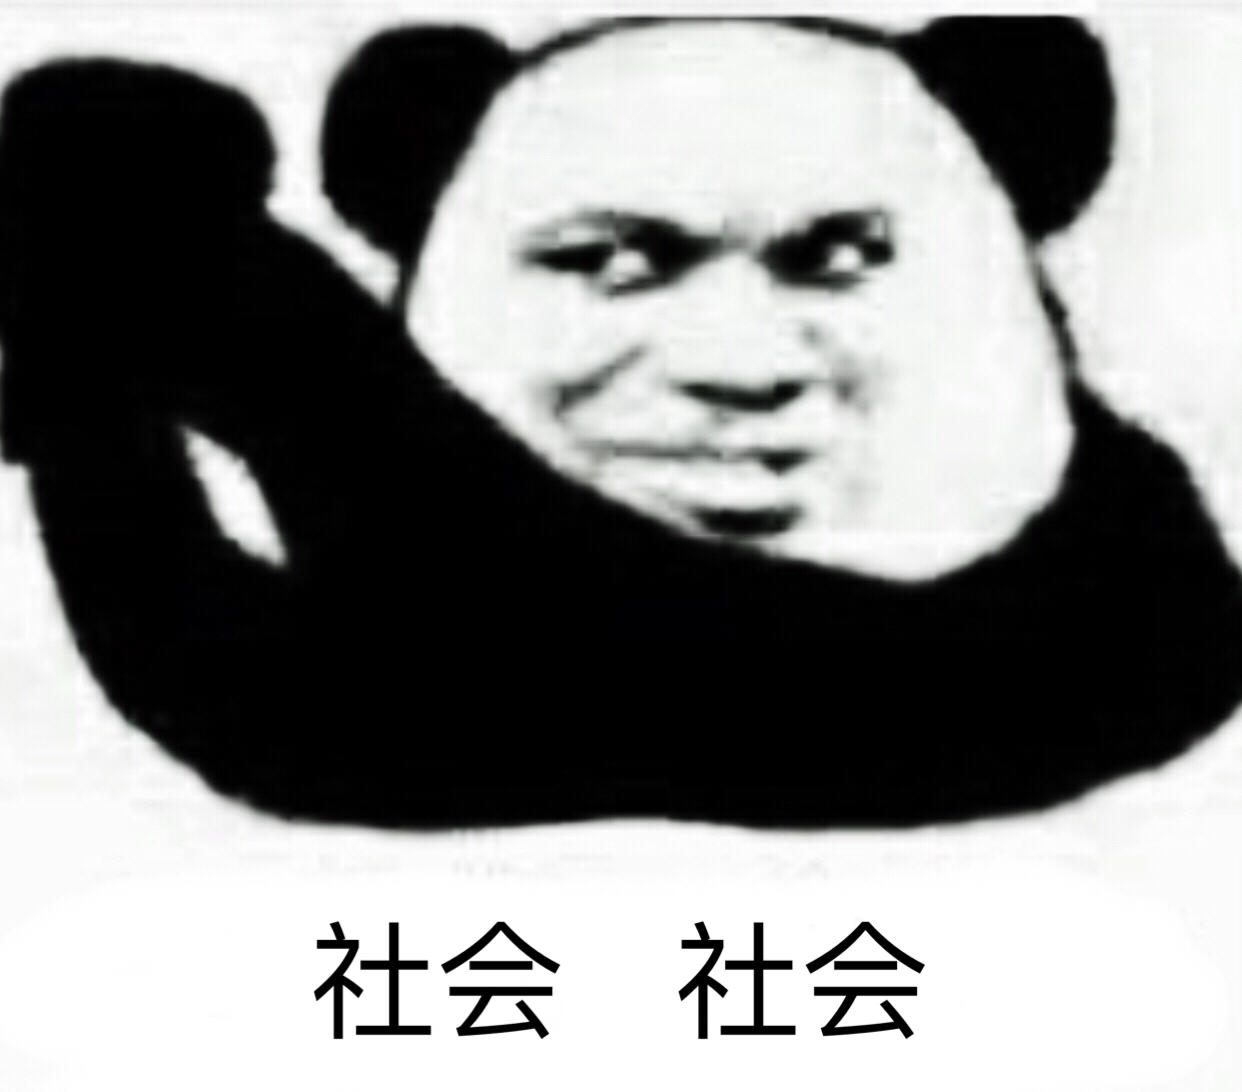 熊猫头抱拳表情包图片